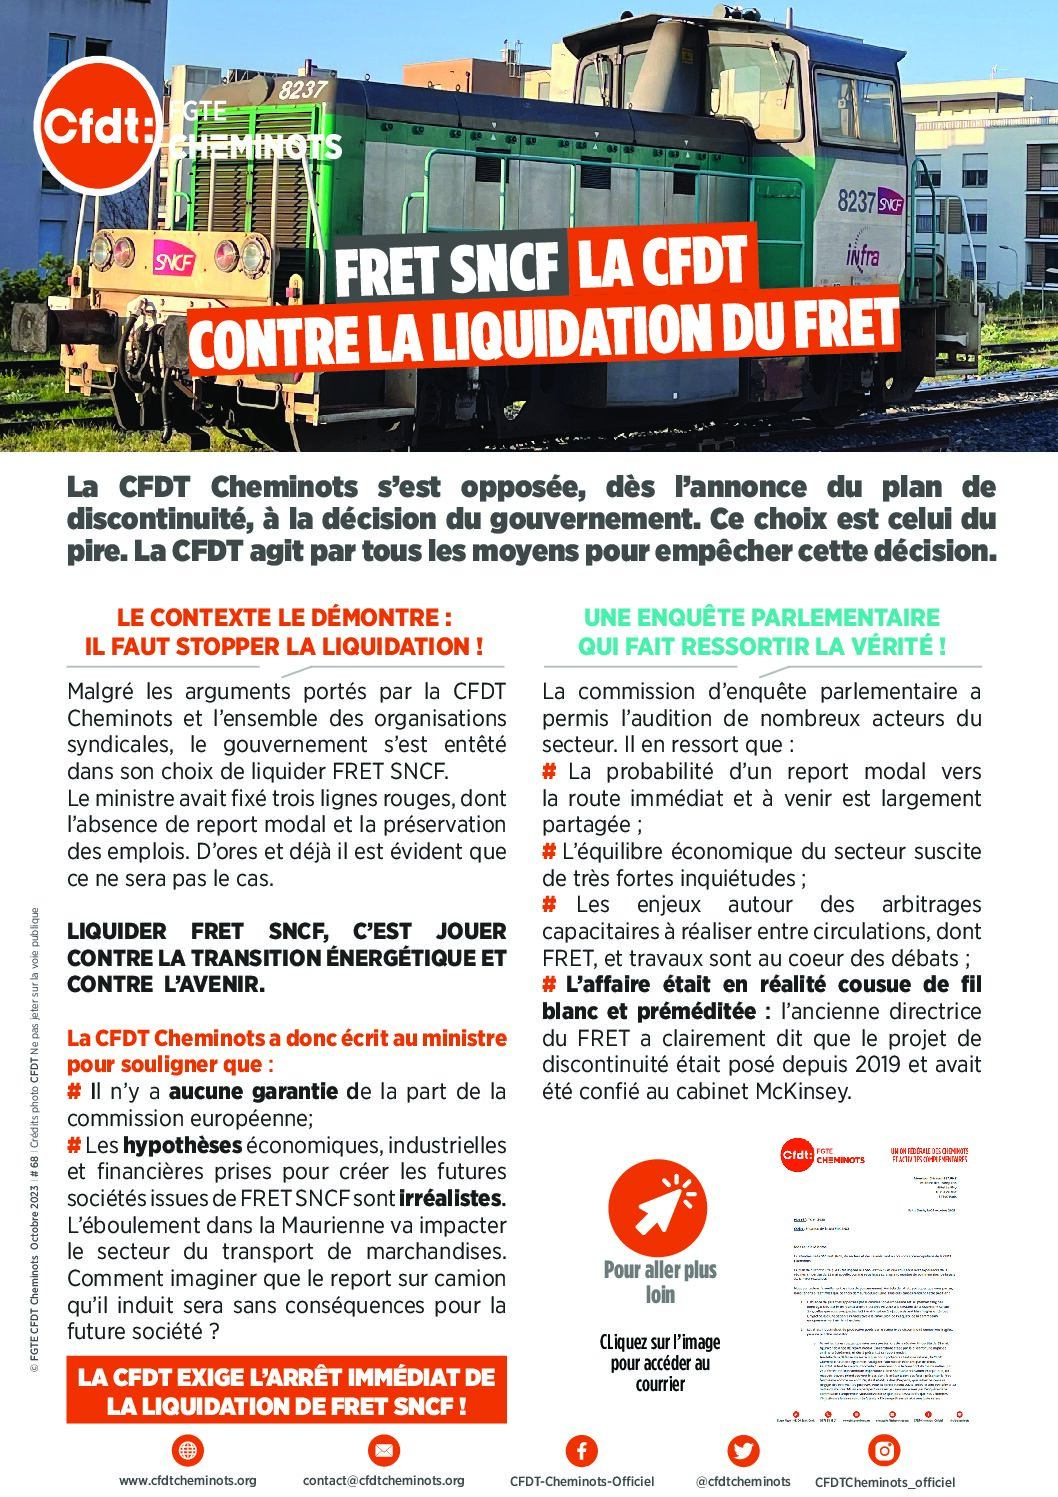 FRET SNCF, la CFDT contre la liquidation du FRET